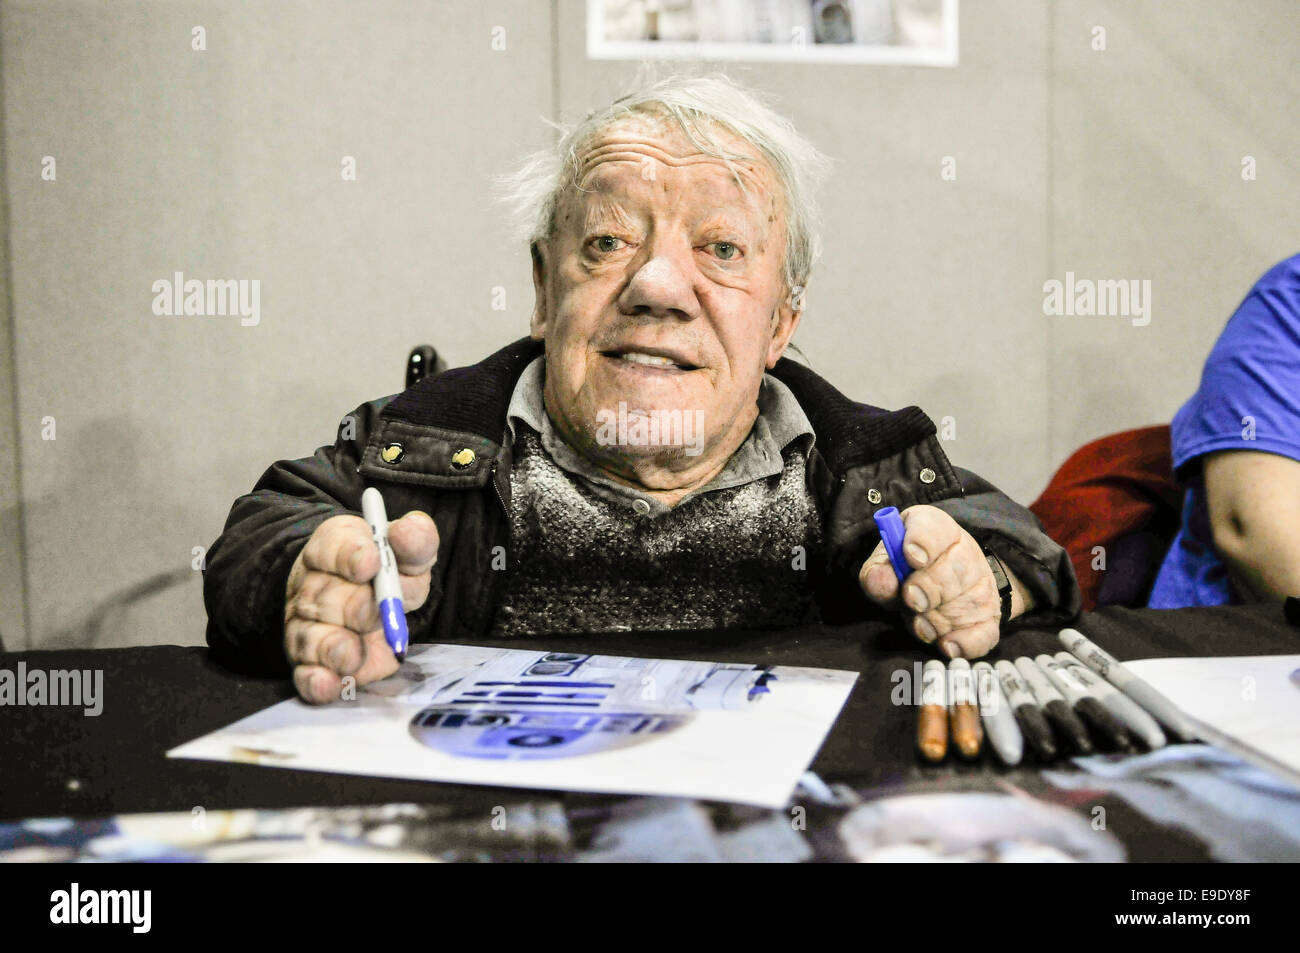 Belfast, Irlande du Nord. 26 Oct 2014 - Kenny Baker, célèbre pour jouer à R2-D2 dans Star Wars, signe des autographes au Comicon 2014 Film et Crédit : Stephen Barnes/Alamy Live News Banque D'Images